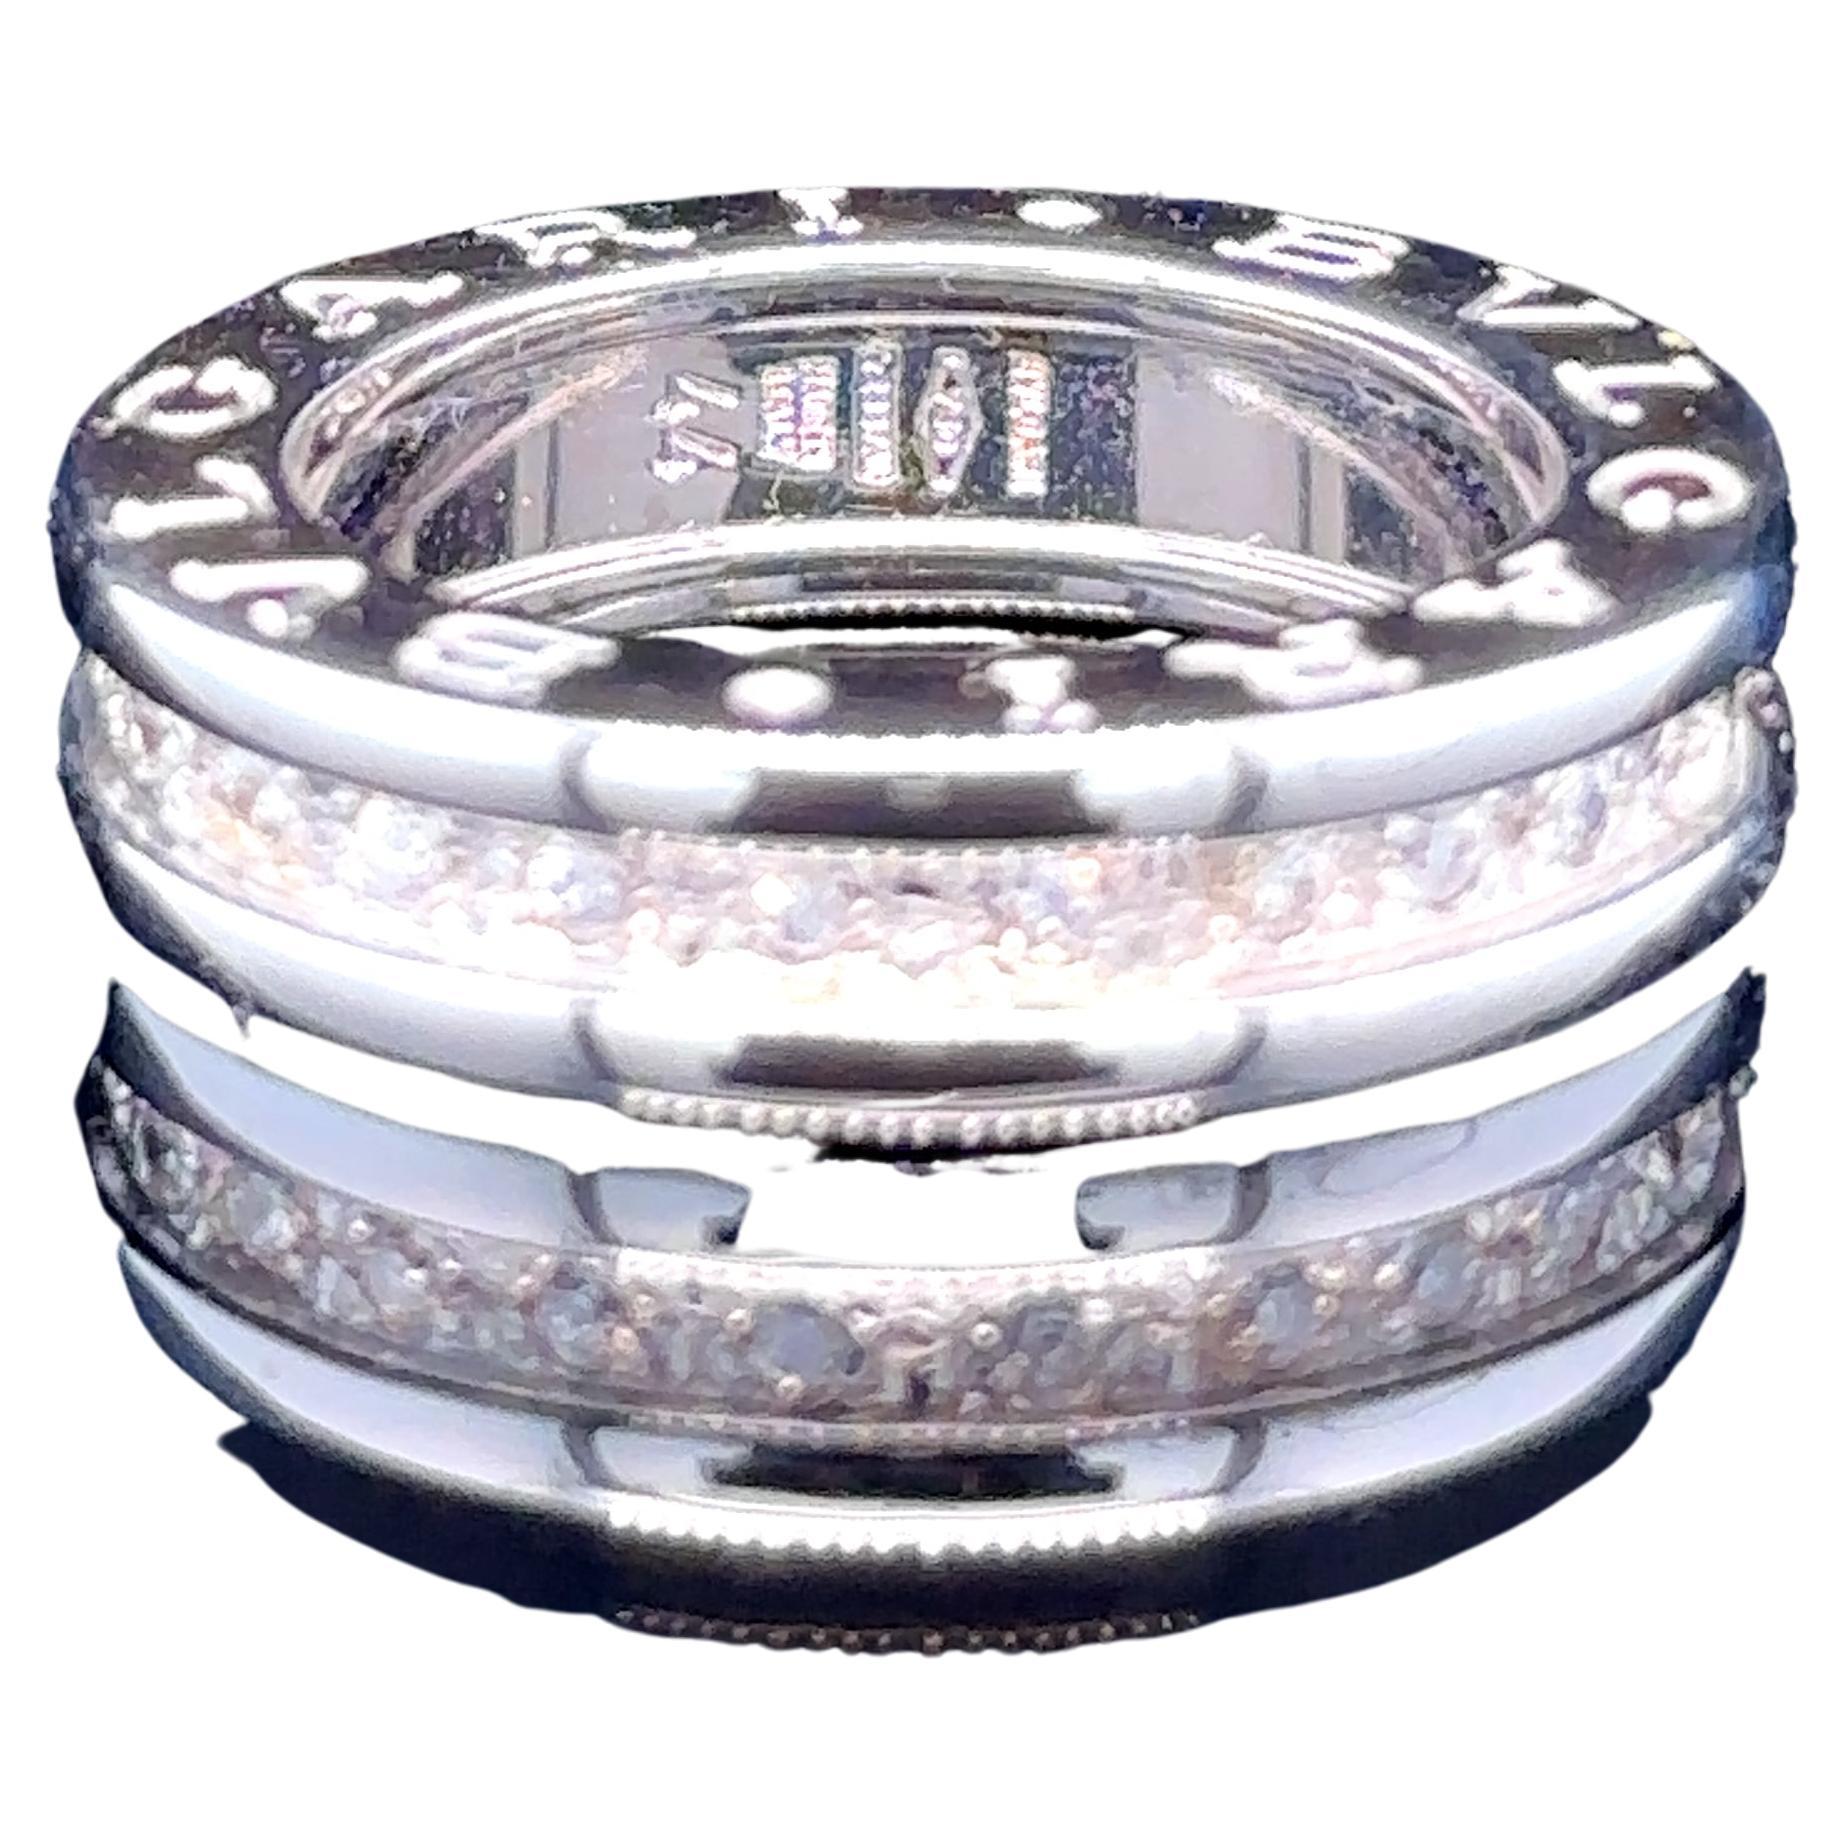 Einzigartige Merkmale: 

A B.Zero1 Ein-Band-Ring

Ein Bulgari-Ring. Hergestellt aus 18 kt Weißgold, Ringgröße F, Gewicht 6 g, mit poliertem Muster.

Insgesamt 22 runde Diamanten im Brillantschliff, Farbe G und Reinheit VS. mit einem Gesamtgewicht